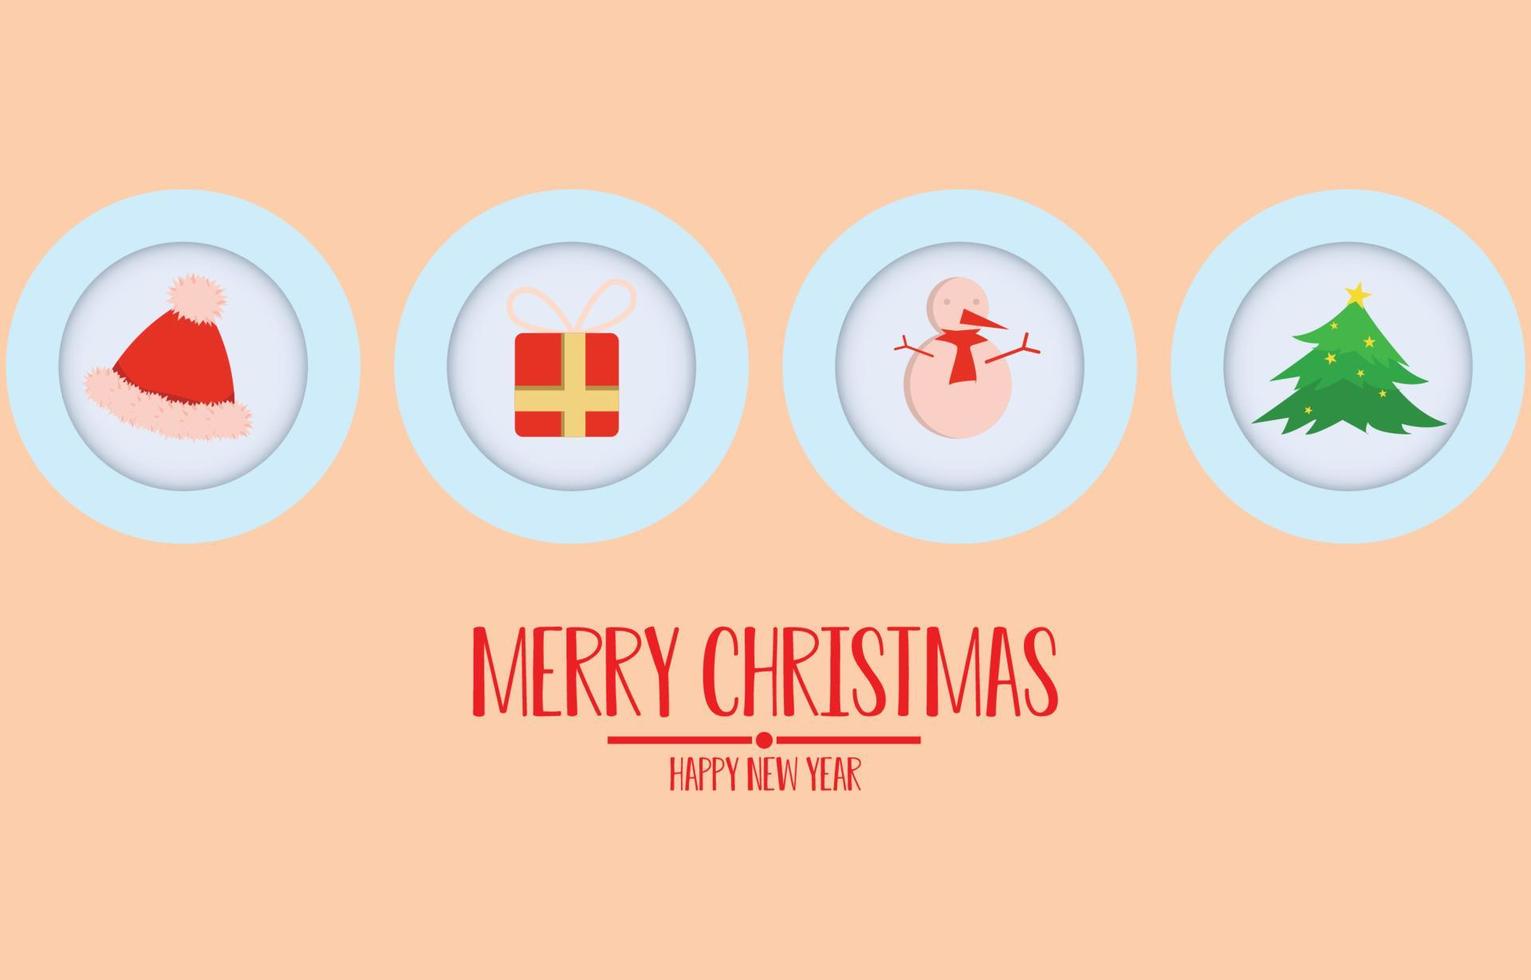 cartão crcle hang tag com mensagem de feliz natal e feliz ano novo. fundo com moldura em branco decorada, ilustração vetorial de inverno vetor